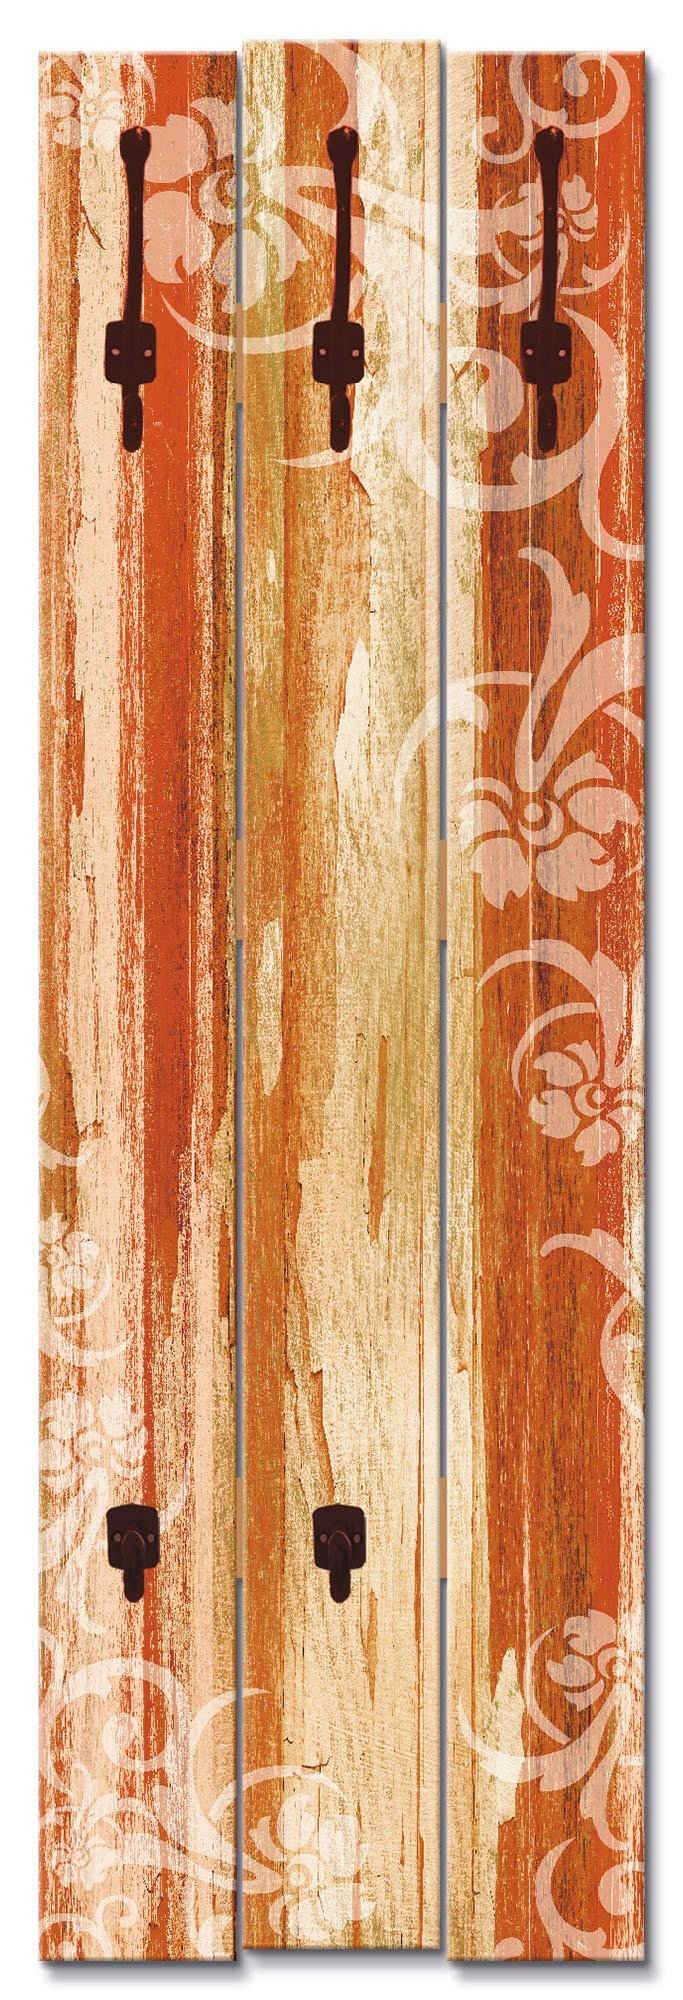 Artland Garderobenleiste »Blumenornamente im alten Stil«, platzsparende Wandgarderobe aus Holz mit 5 Haken, geeignet für kleinen, schmalen Flur, Flurgarderobe